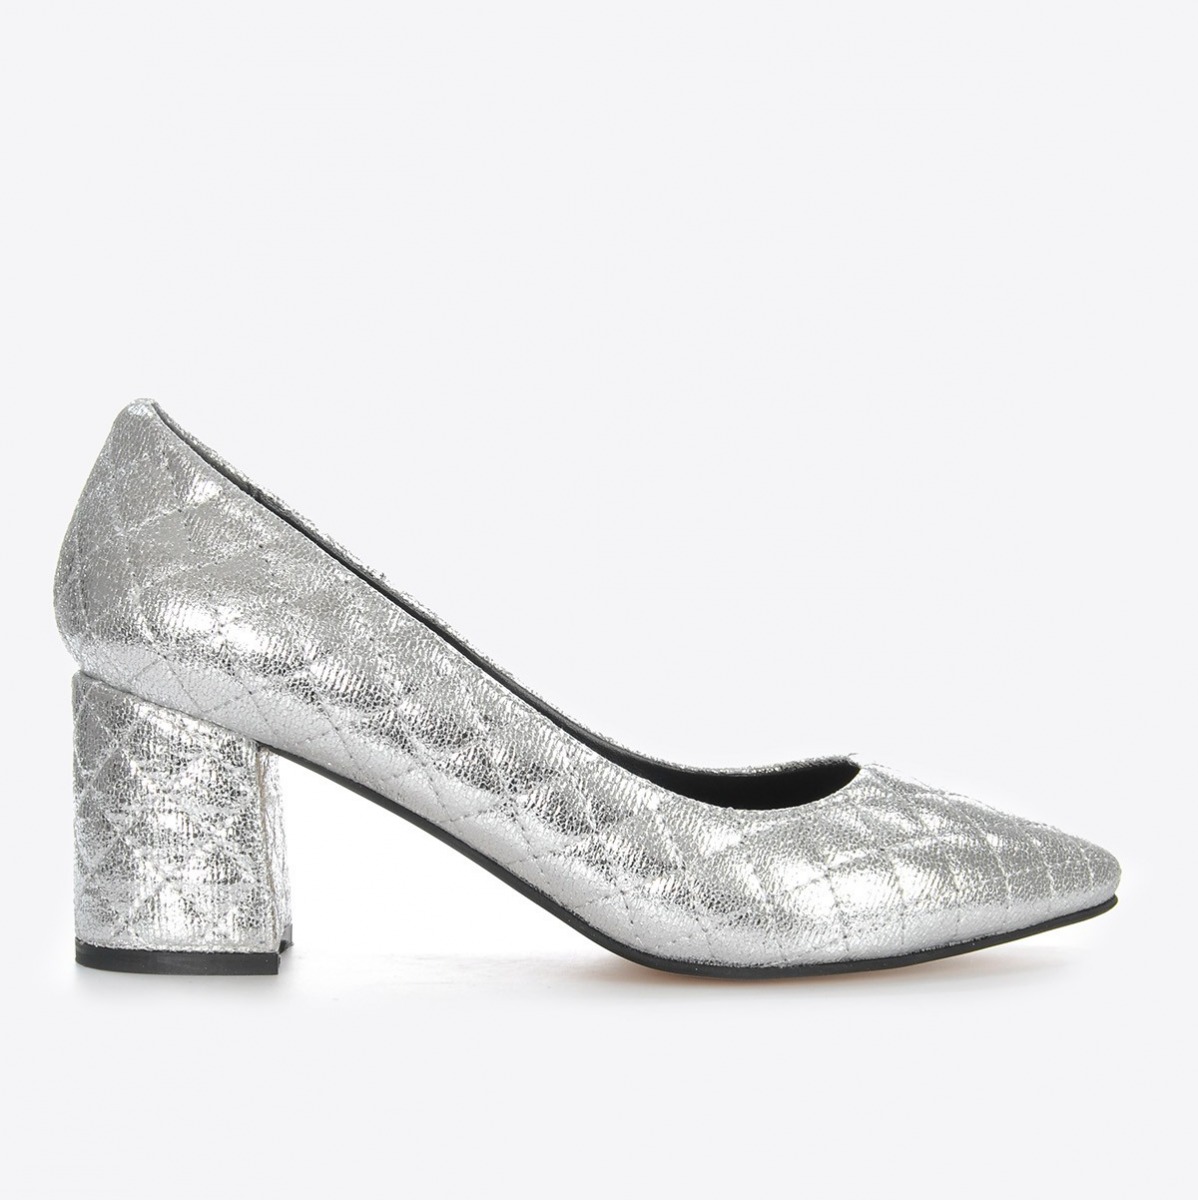 Flo Kadın Gümüş Kapitone Klasik Topuklu Ayakkabı VZN21-042Y. 2